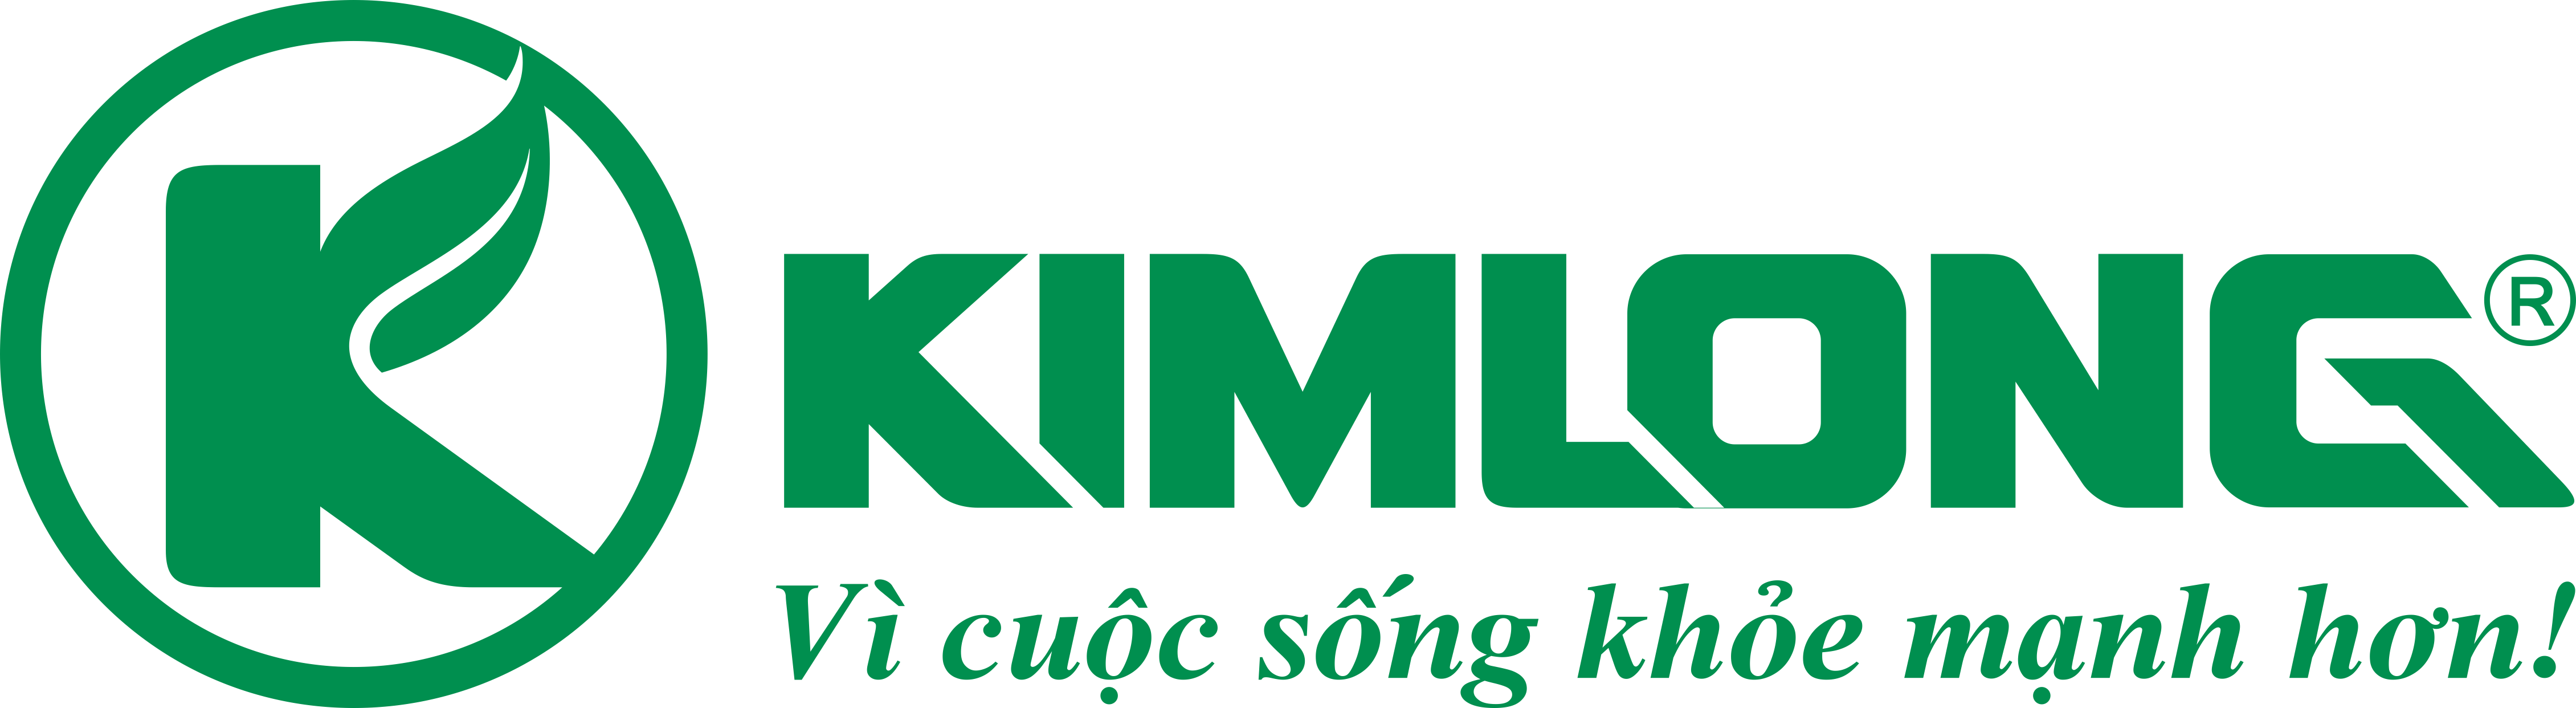 Mừng kỷ niệm Dược Kim Long tròn 15  tuổi (2002 – 2017)